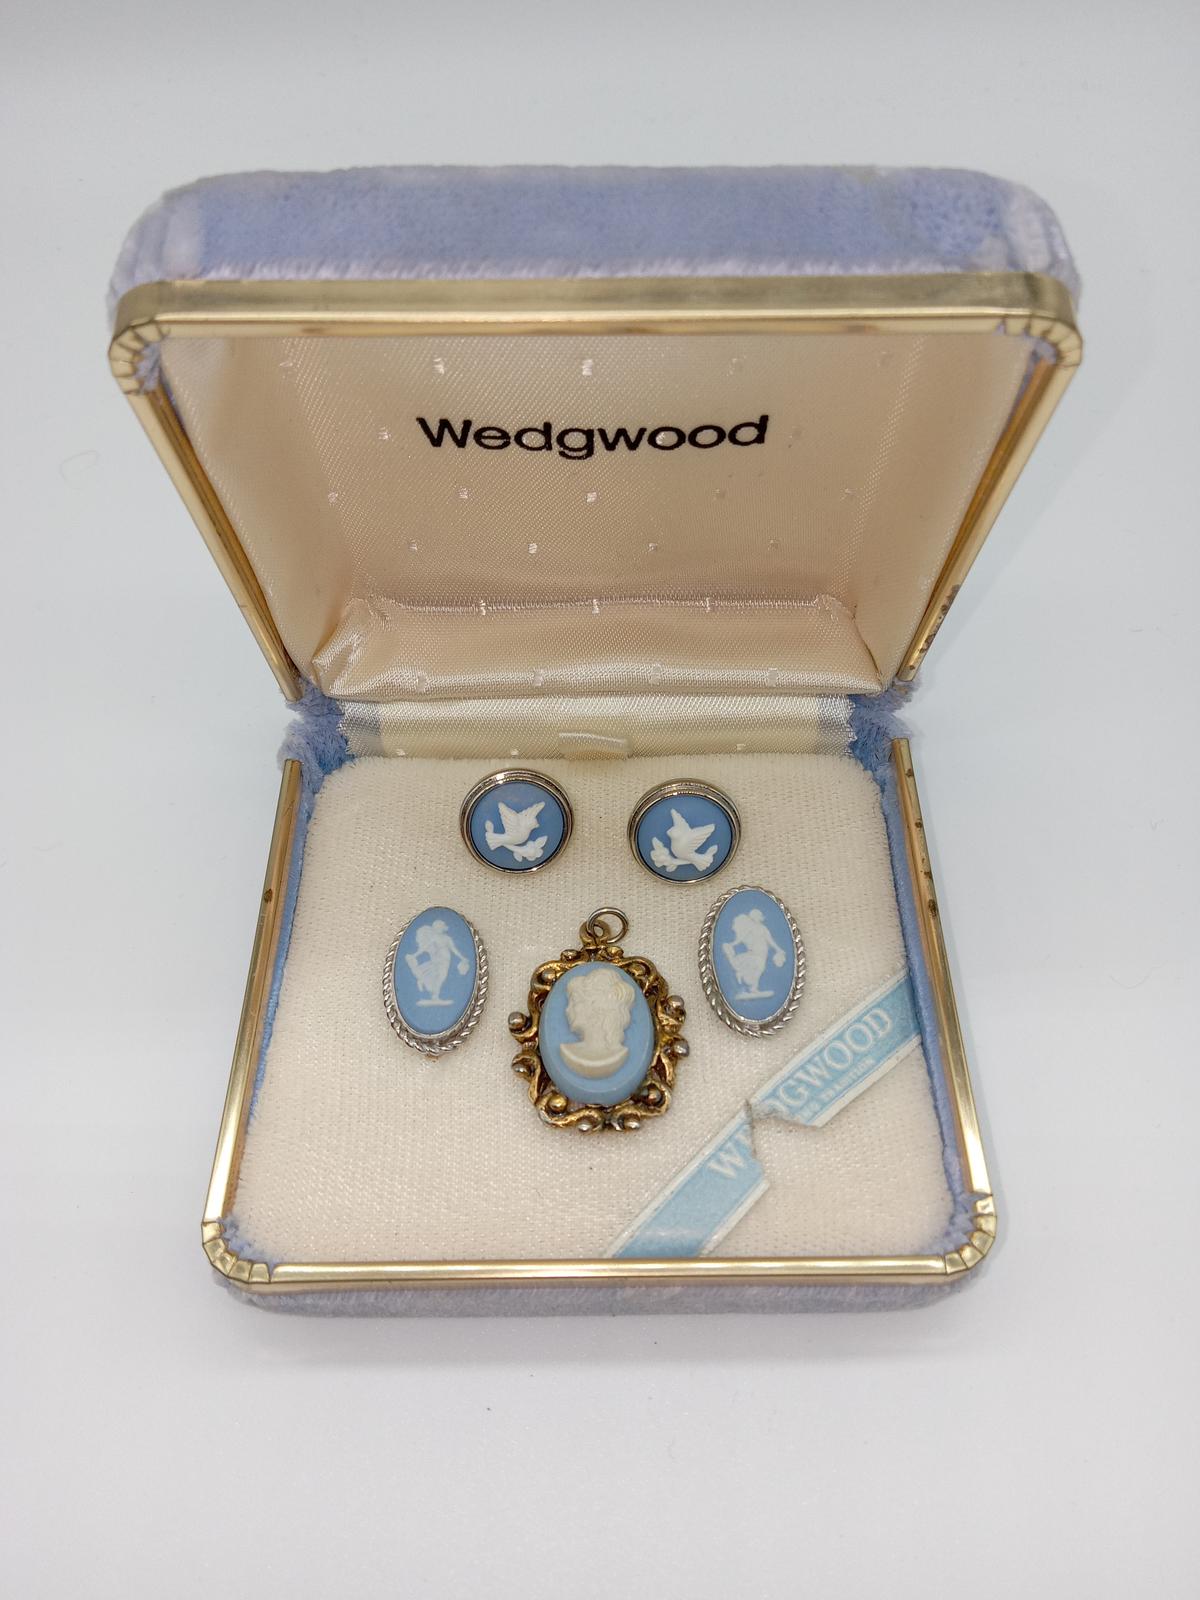 Wedgewood Vintage Jewelry